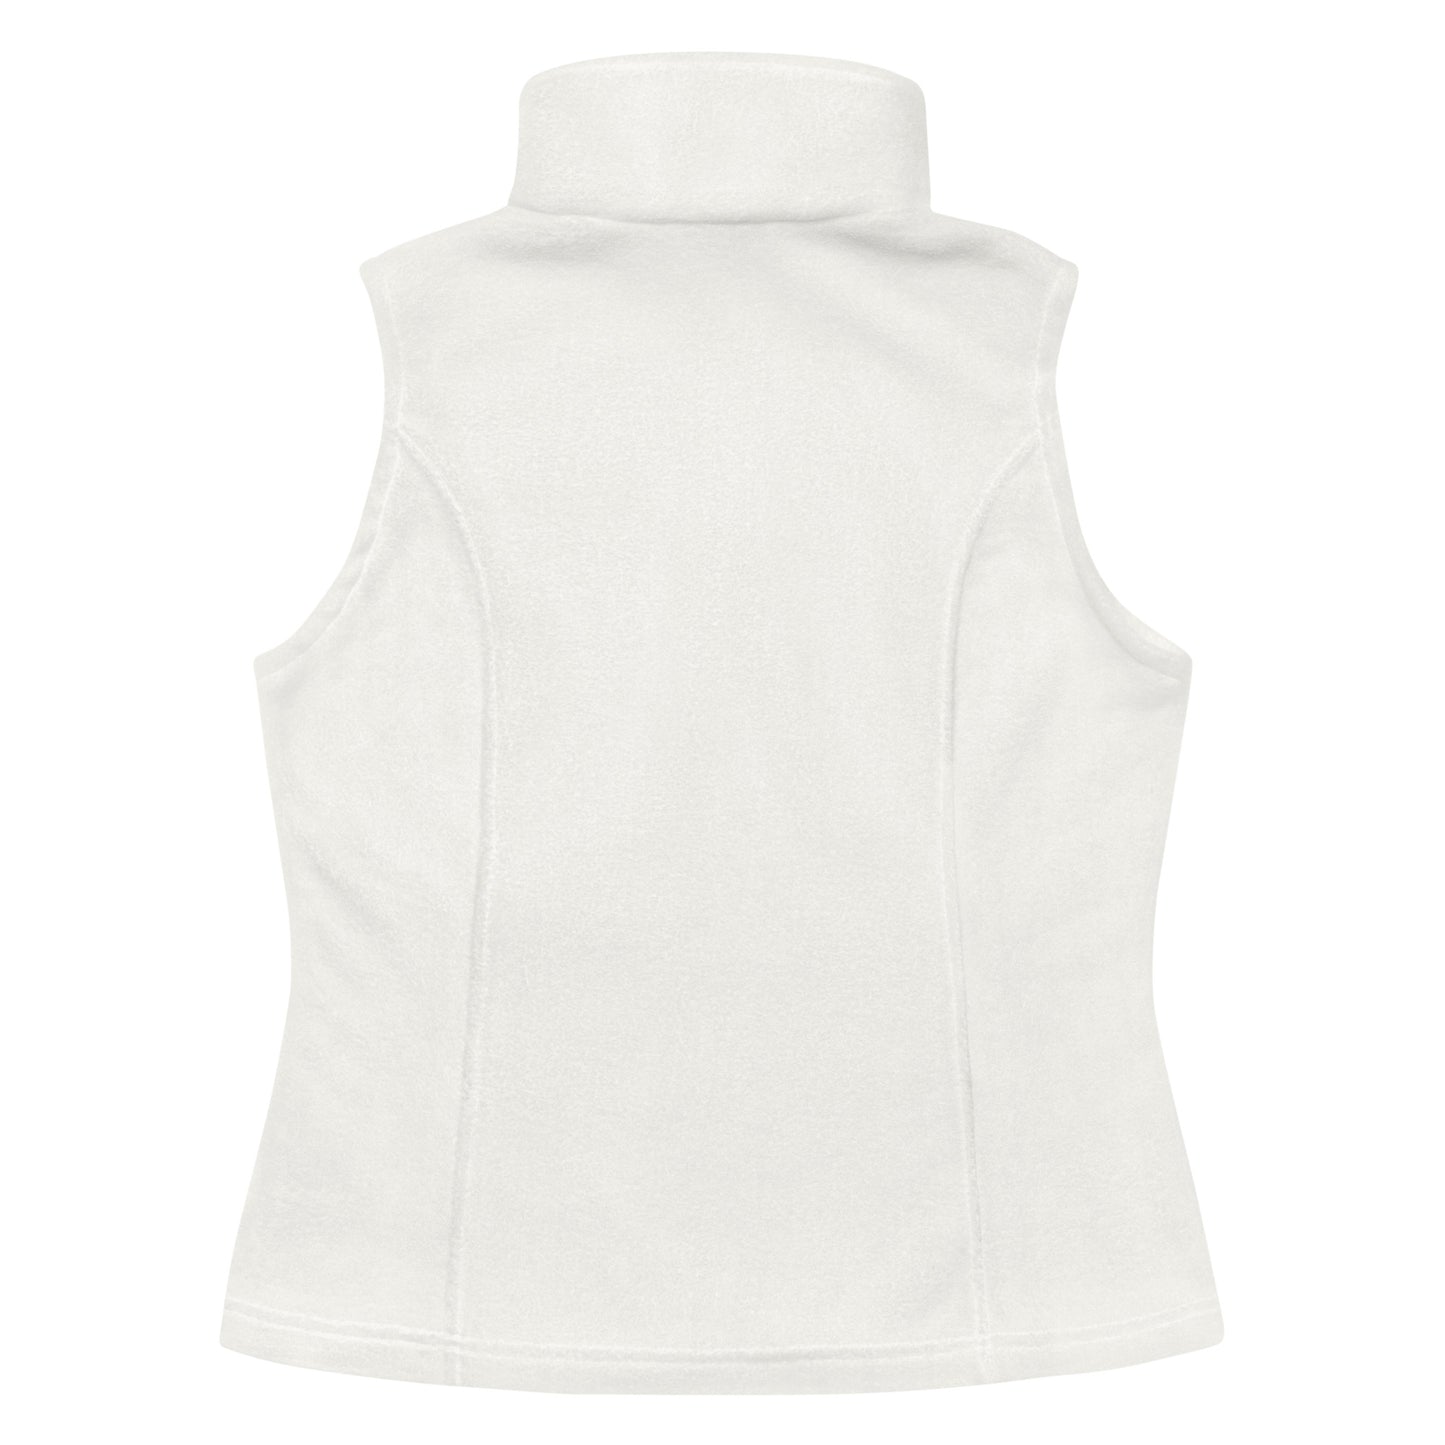 Women’s Hannim Columbia fleece vest